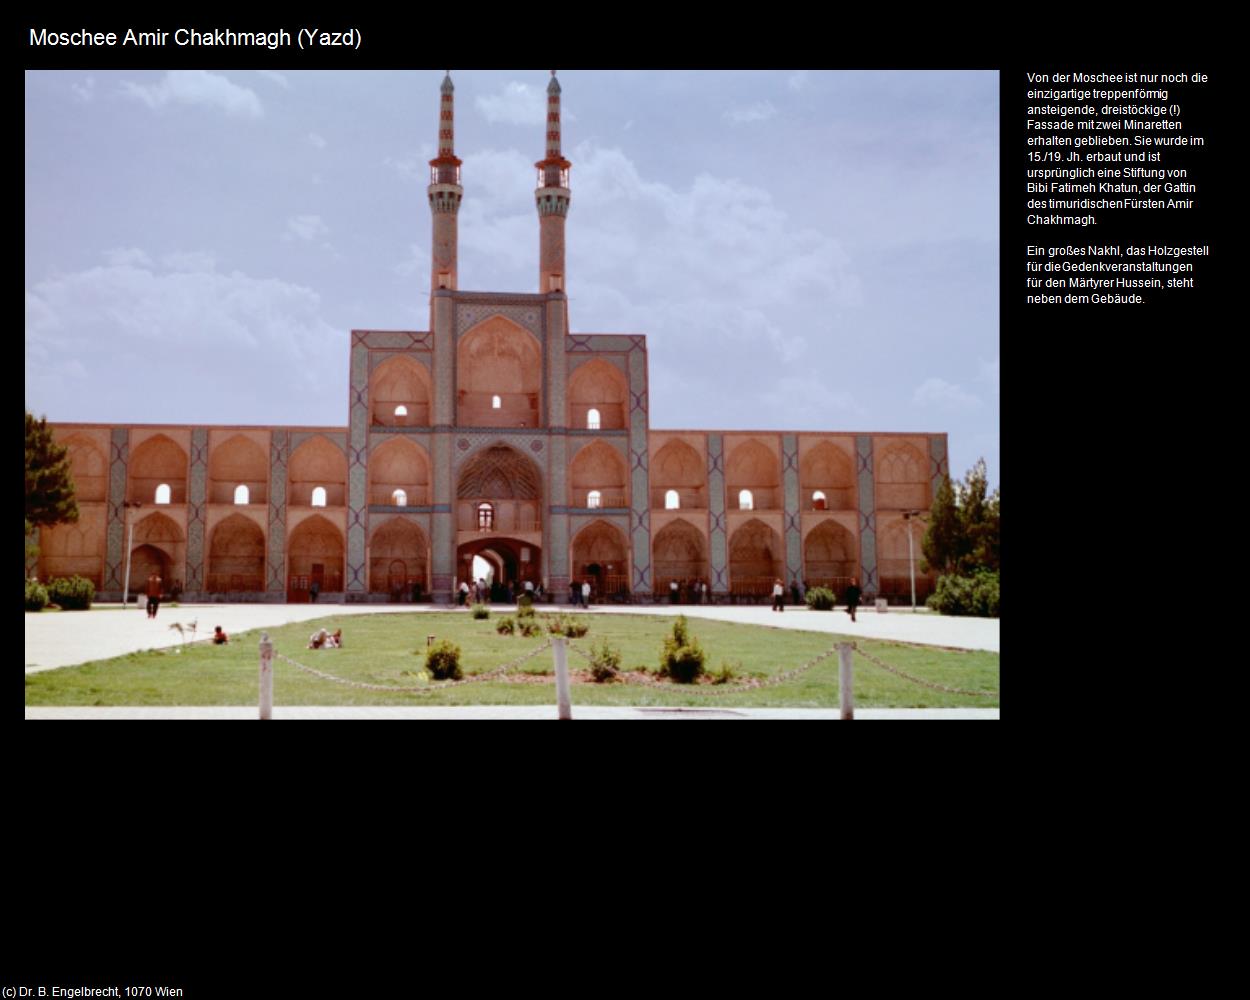 Moschee Amir Chakhmagh (Yazd) in Iran